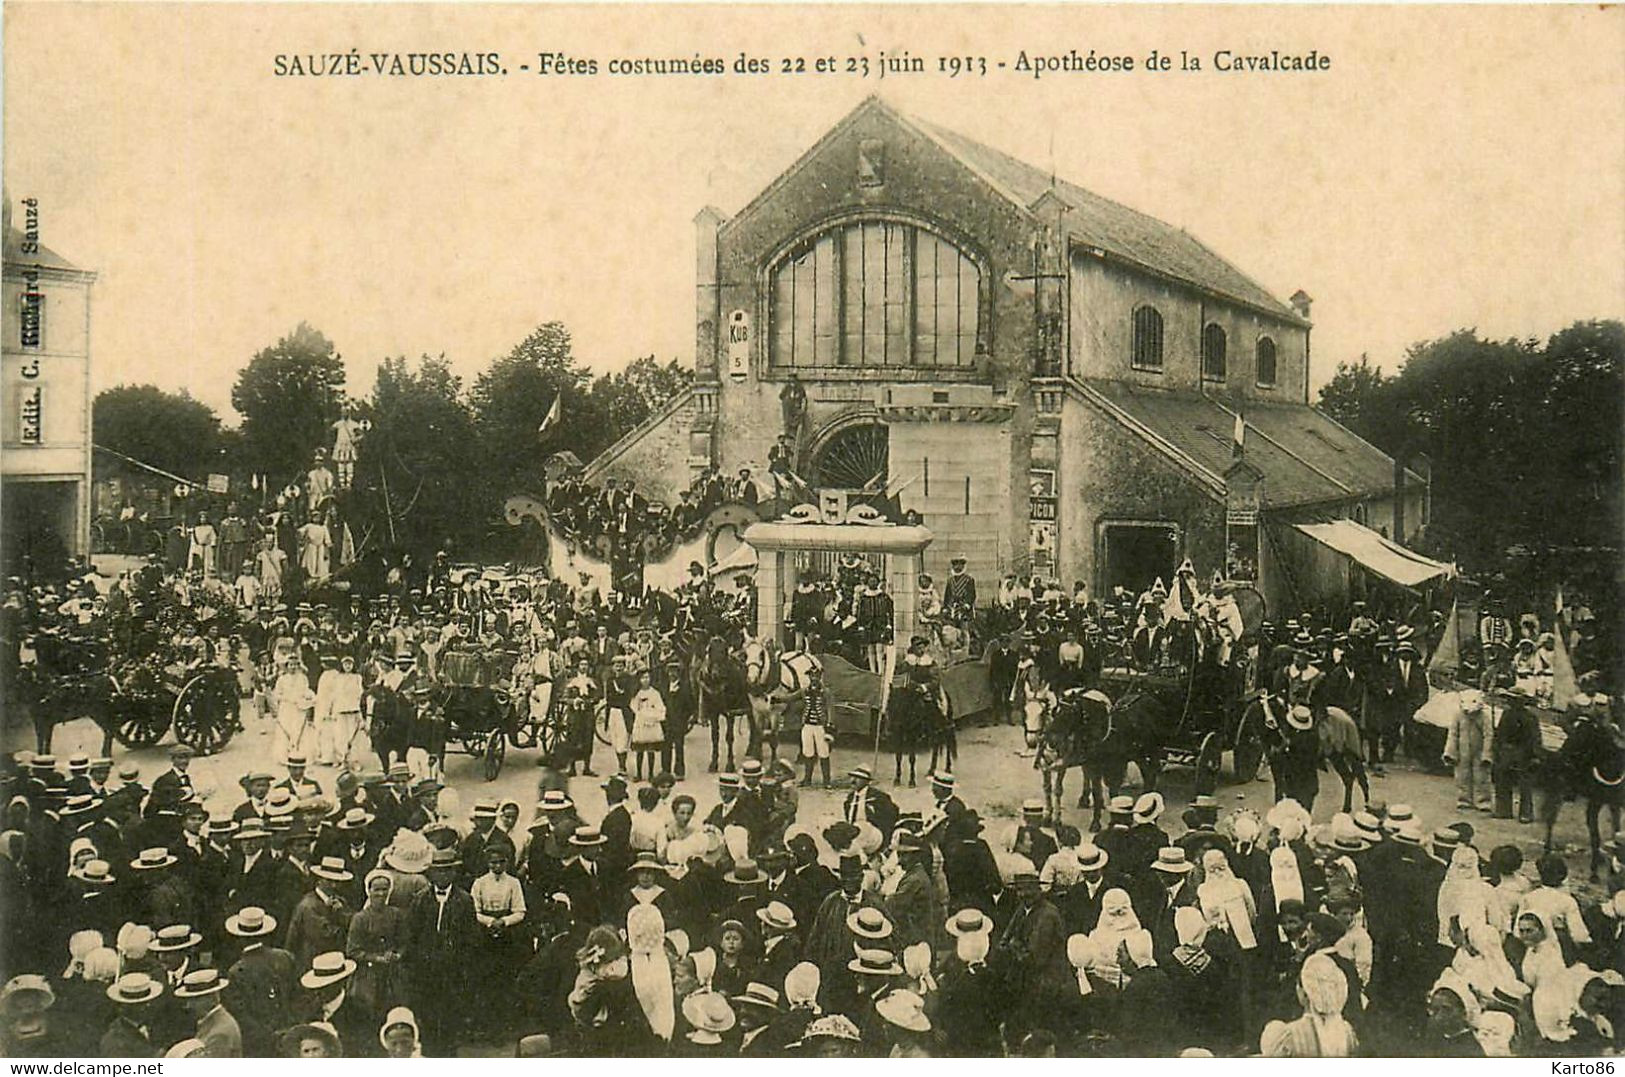 Sauzé Vaussais * Fêtes Costumées Des 22 Et 23 Juin 1913 * Apothéose De La Cavalcade * Fête Locale Folklore Char Défilé - Sauze Vaussais